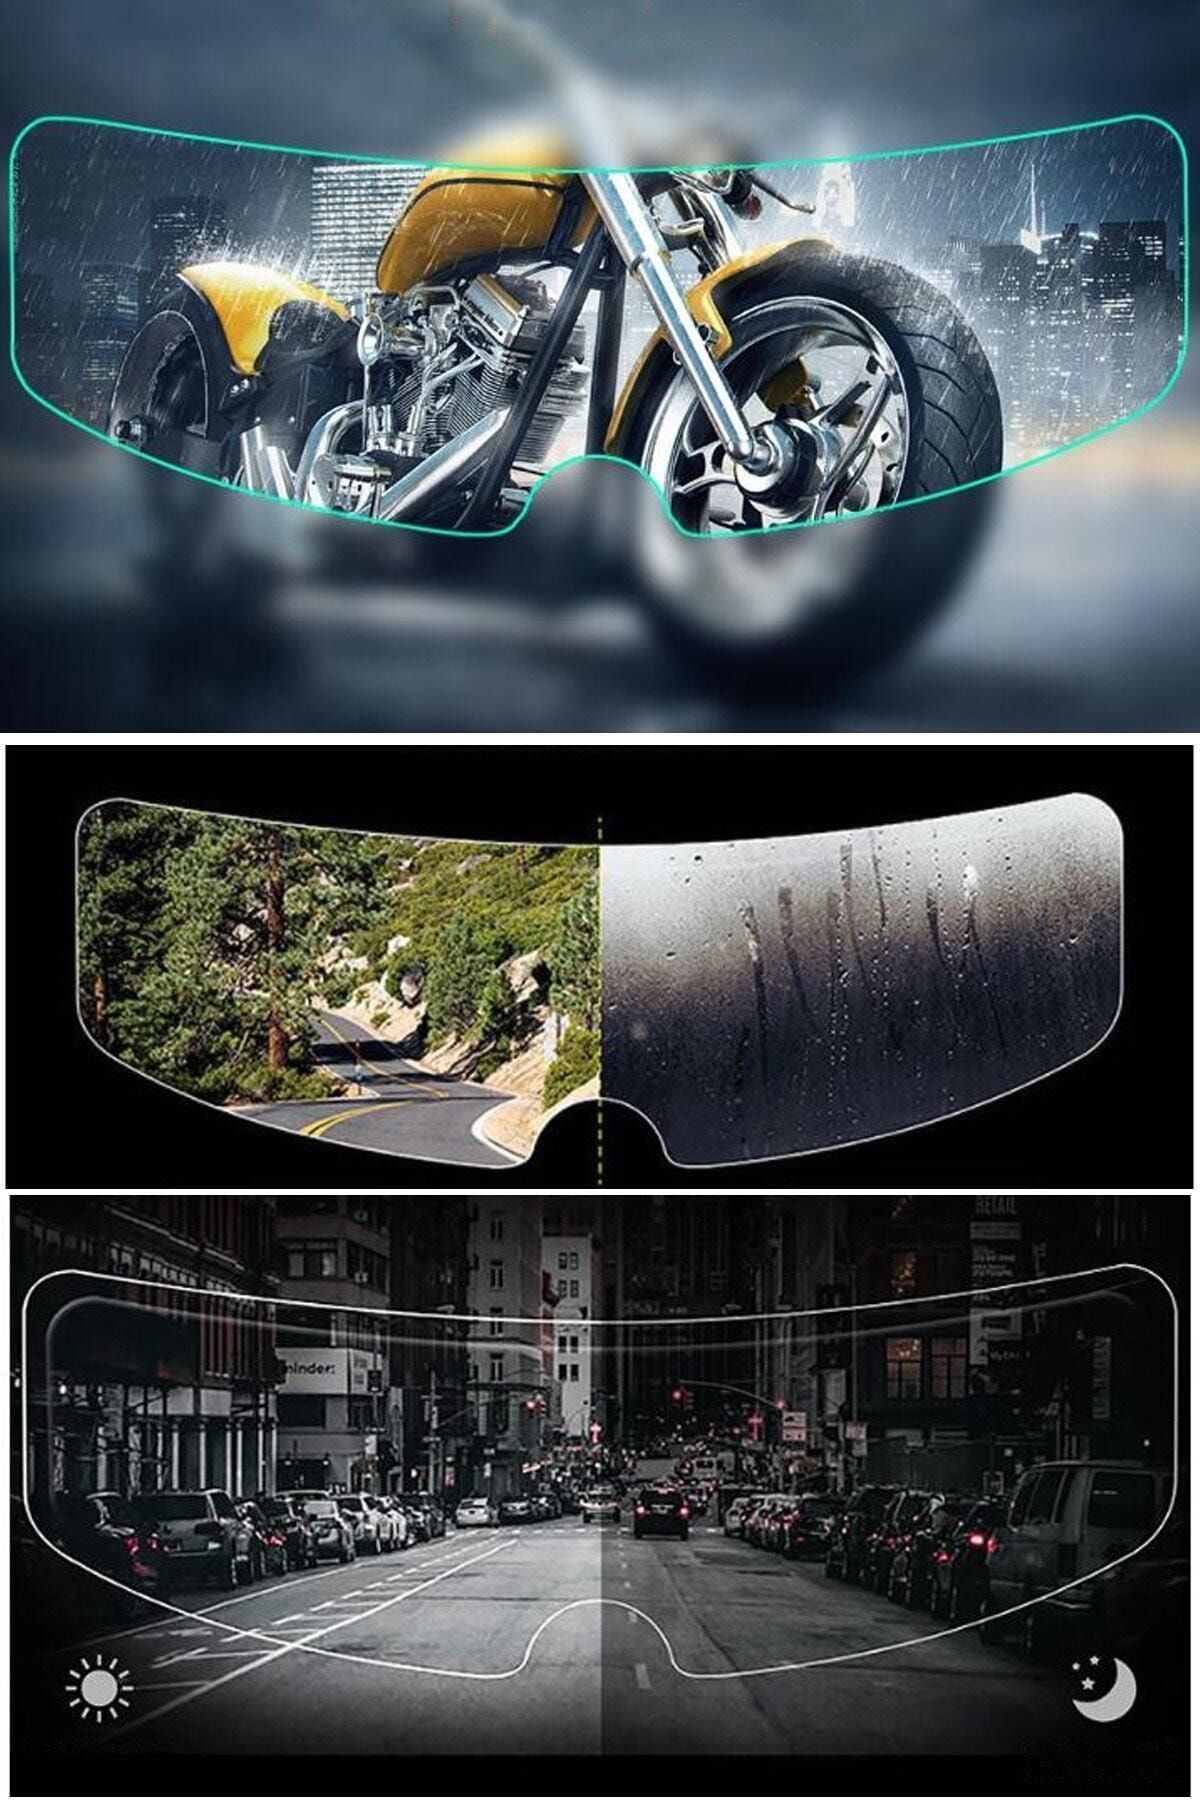 AnkaShop Motosiklet Kaskı Için Buhu Önleyici Ve Vizör Camı Yağmur Kaydırıcı Universal Pinlock